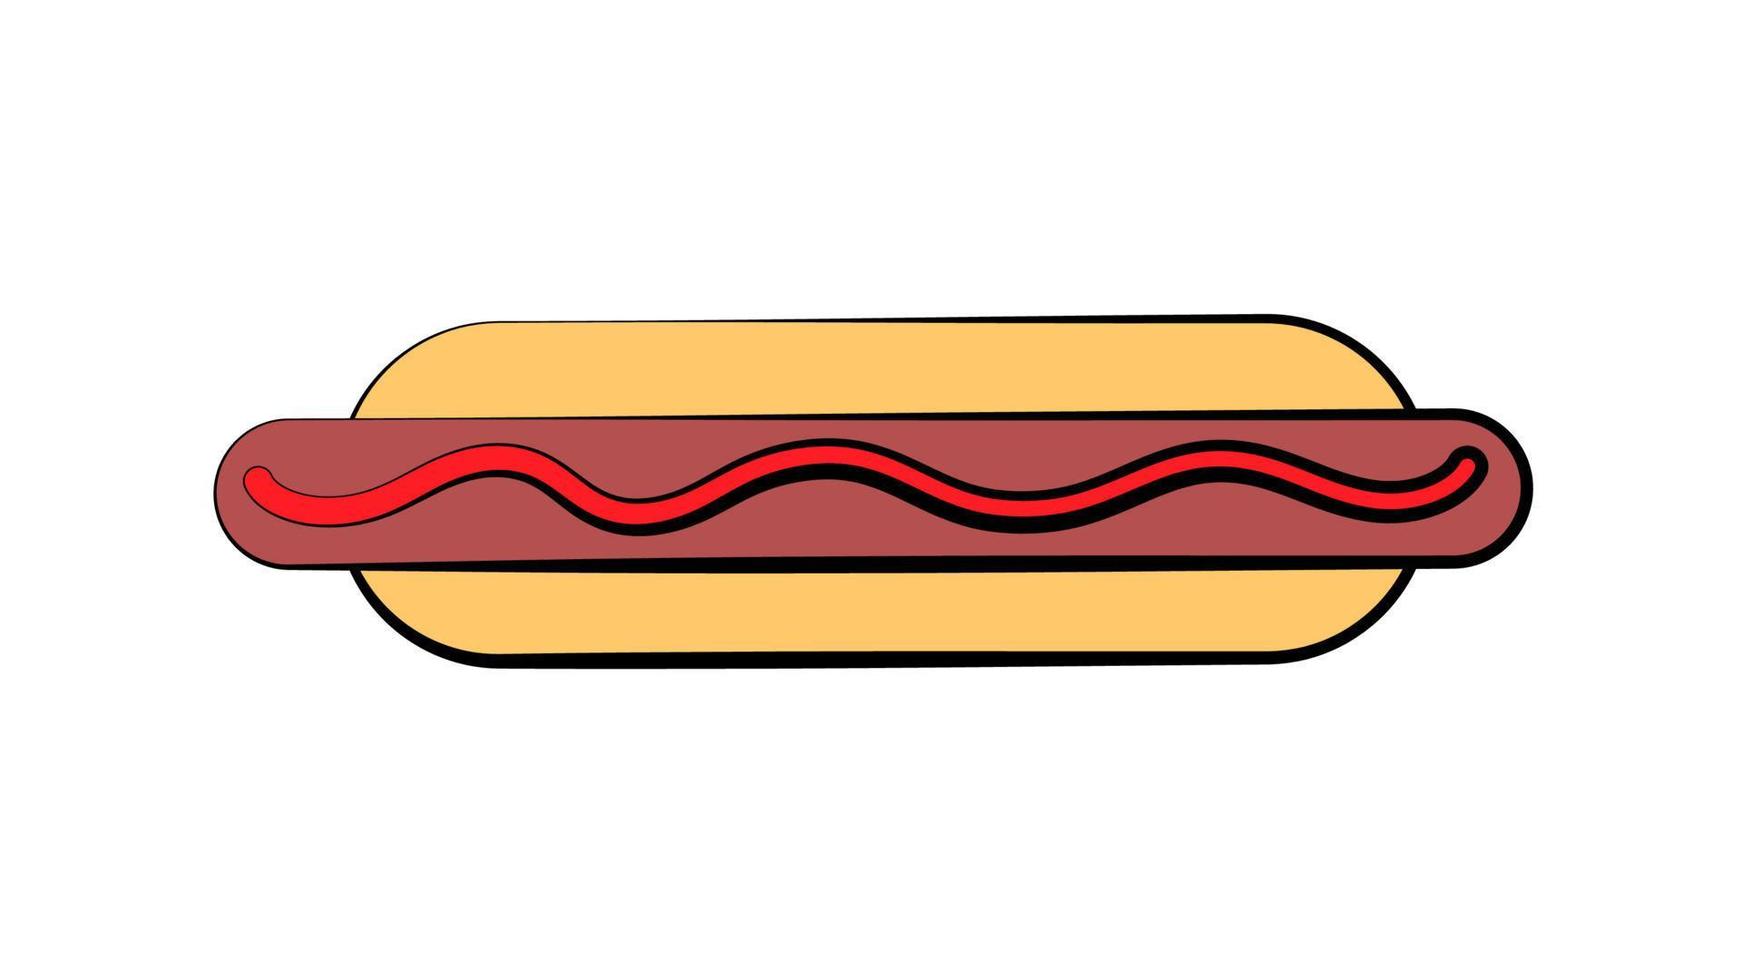 cachorro-quente em fundo branco, ilustração vetorial. pão com salsicha, ketchup, mostarda. recheio saudável, um prato prejudicial. lanche de fast-food. almoço de alto teor calórico vetor